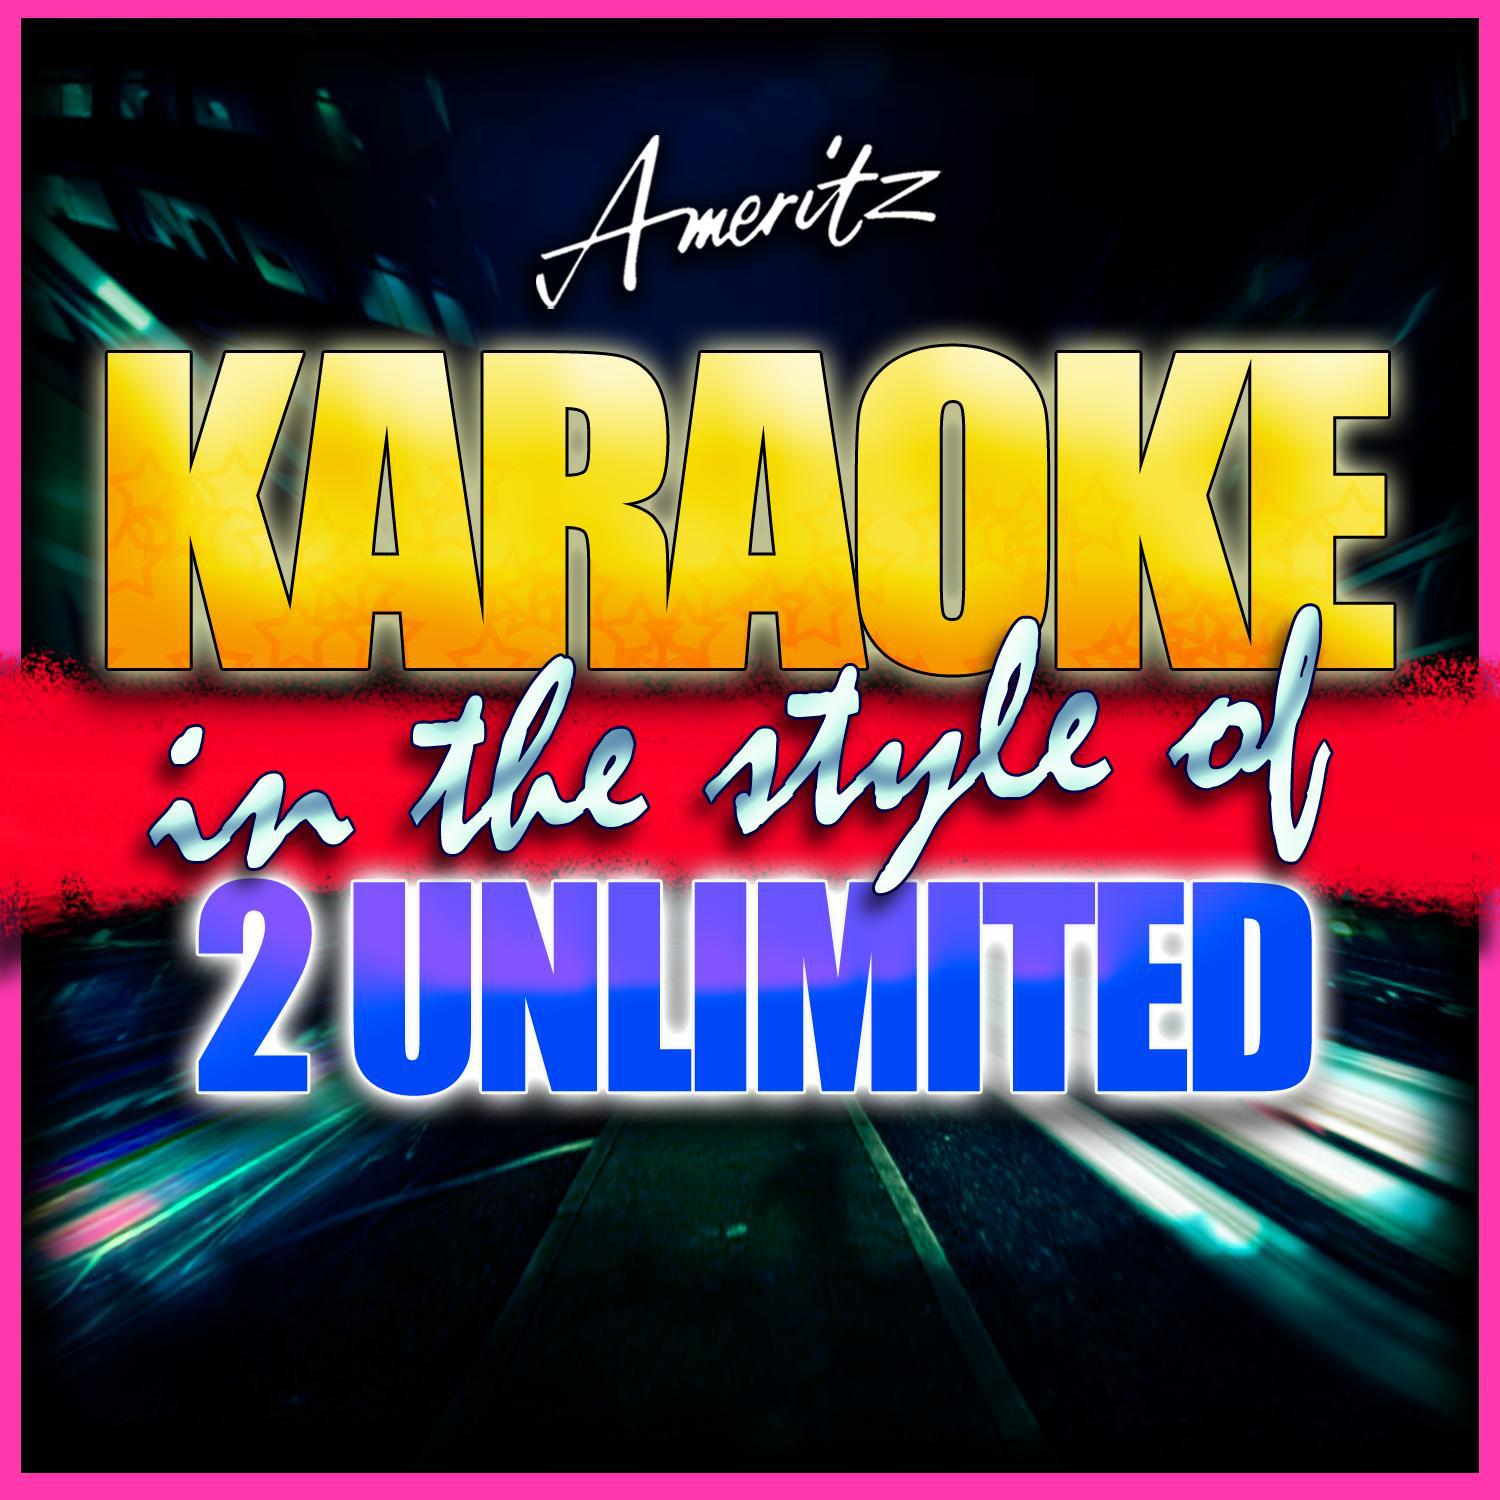 Karaoke - 2 Unlimited